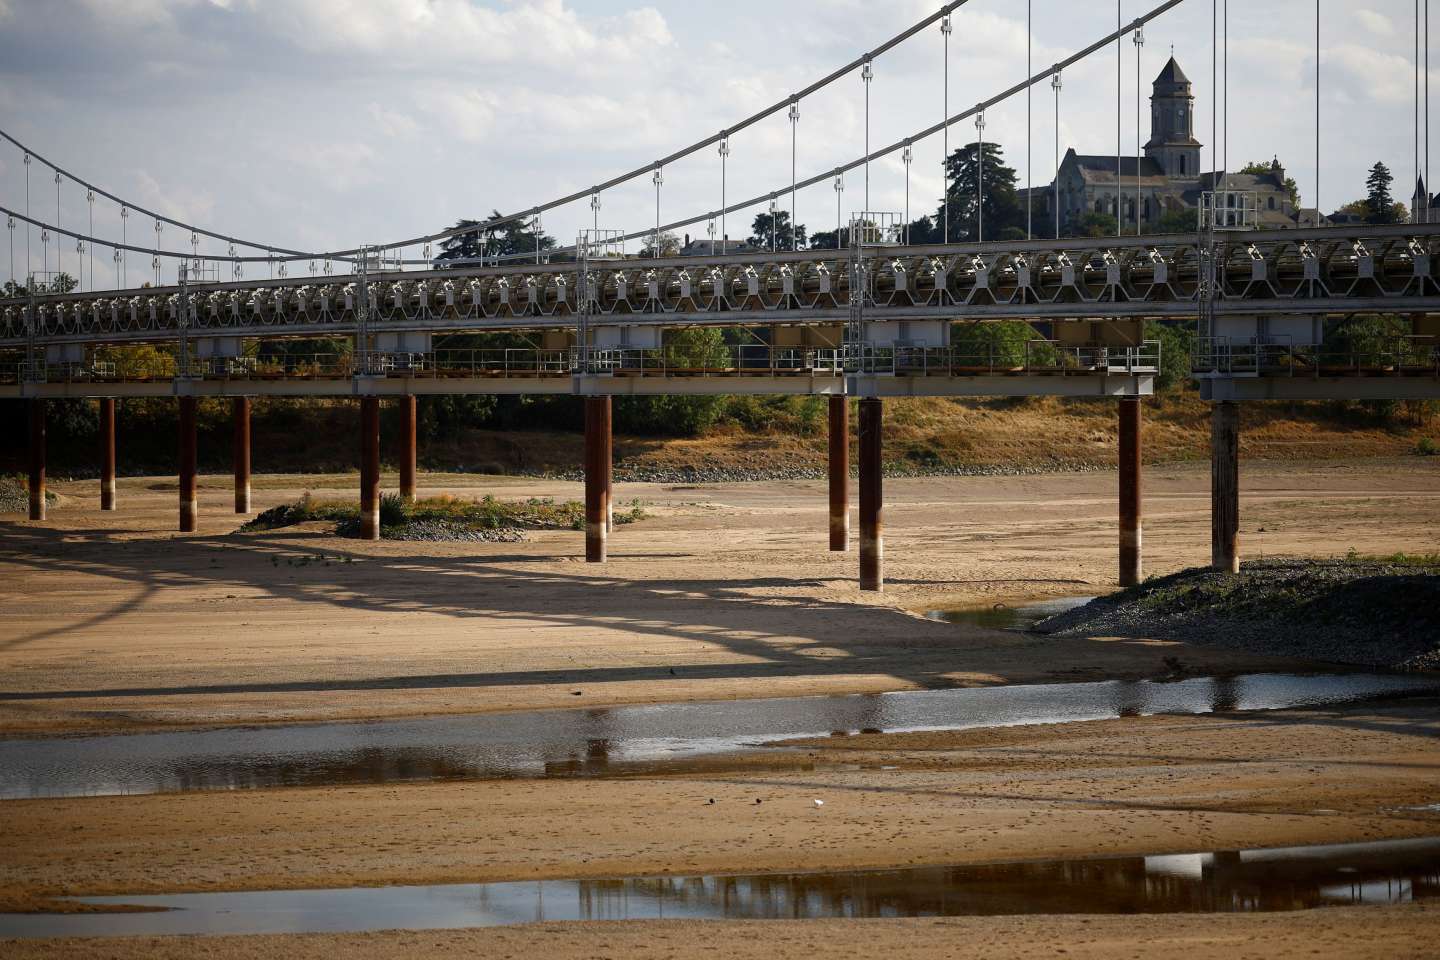 Les dégâts aux bâtiments dus à la sécheresse en France devraient coûter entre 1,6 et 2,4 milliards d’euros en 2022